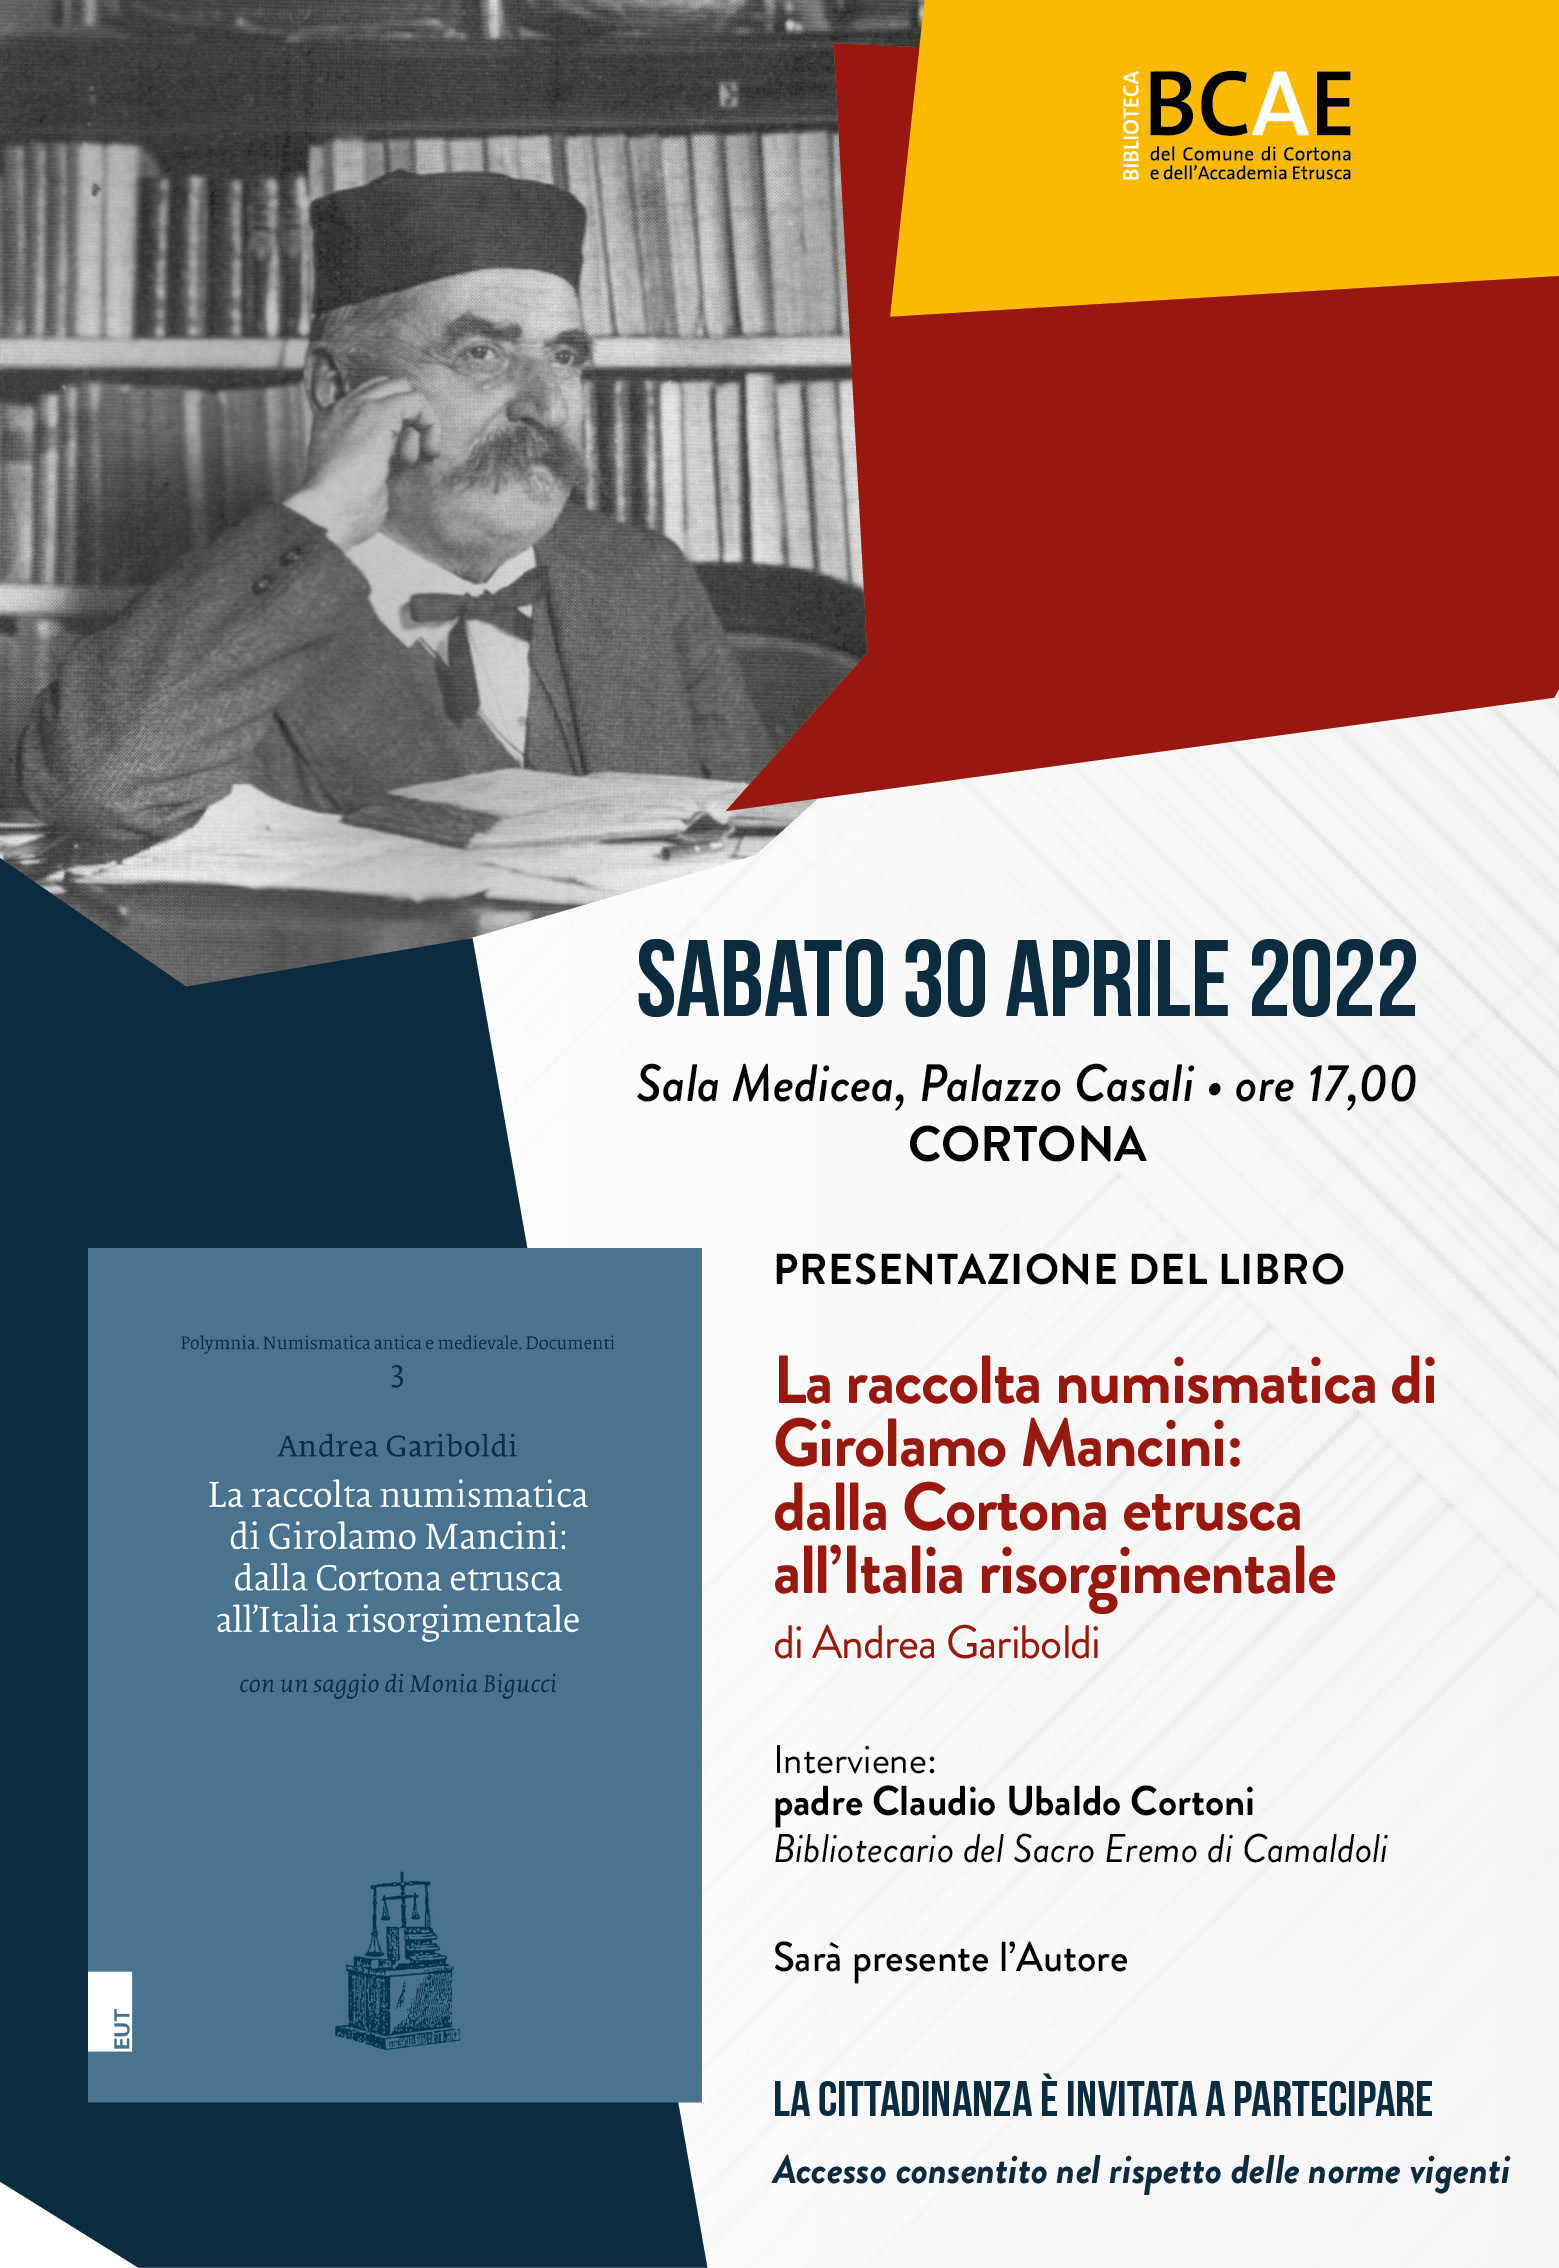 La locandina dell'evento di presentazione del volume di Andrea Gariboldi dedicato alla collezione Girolamo Mancini, un patrimonio finalmente riscoperto